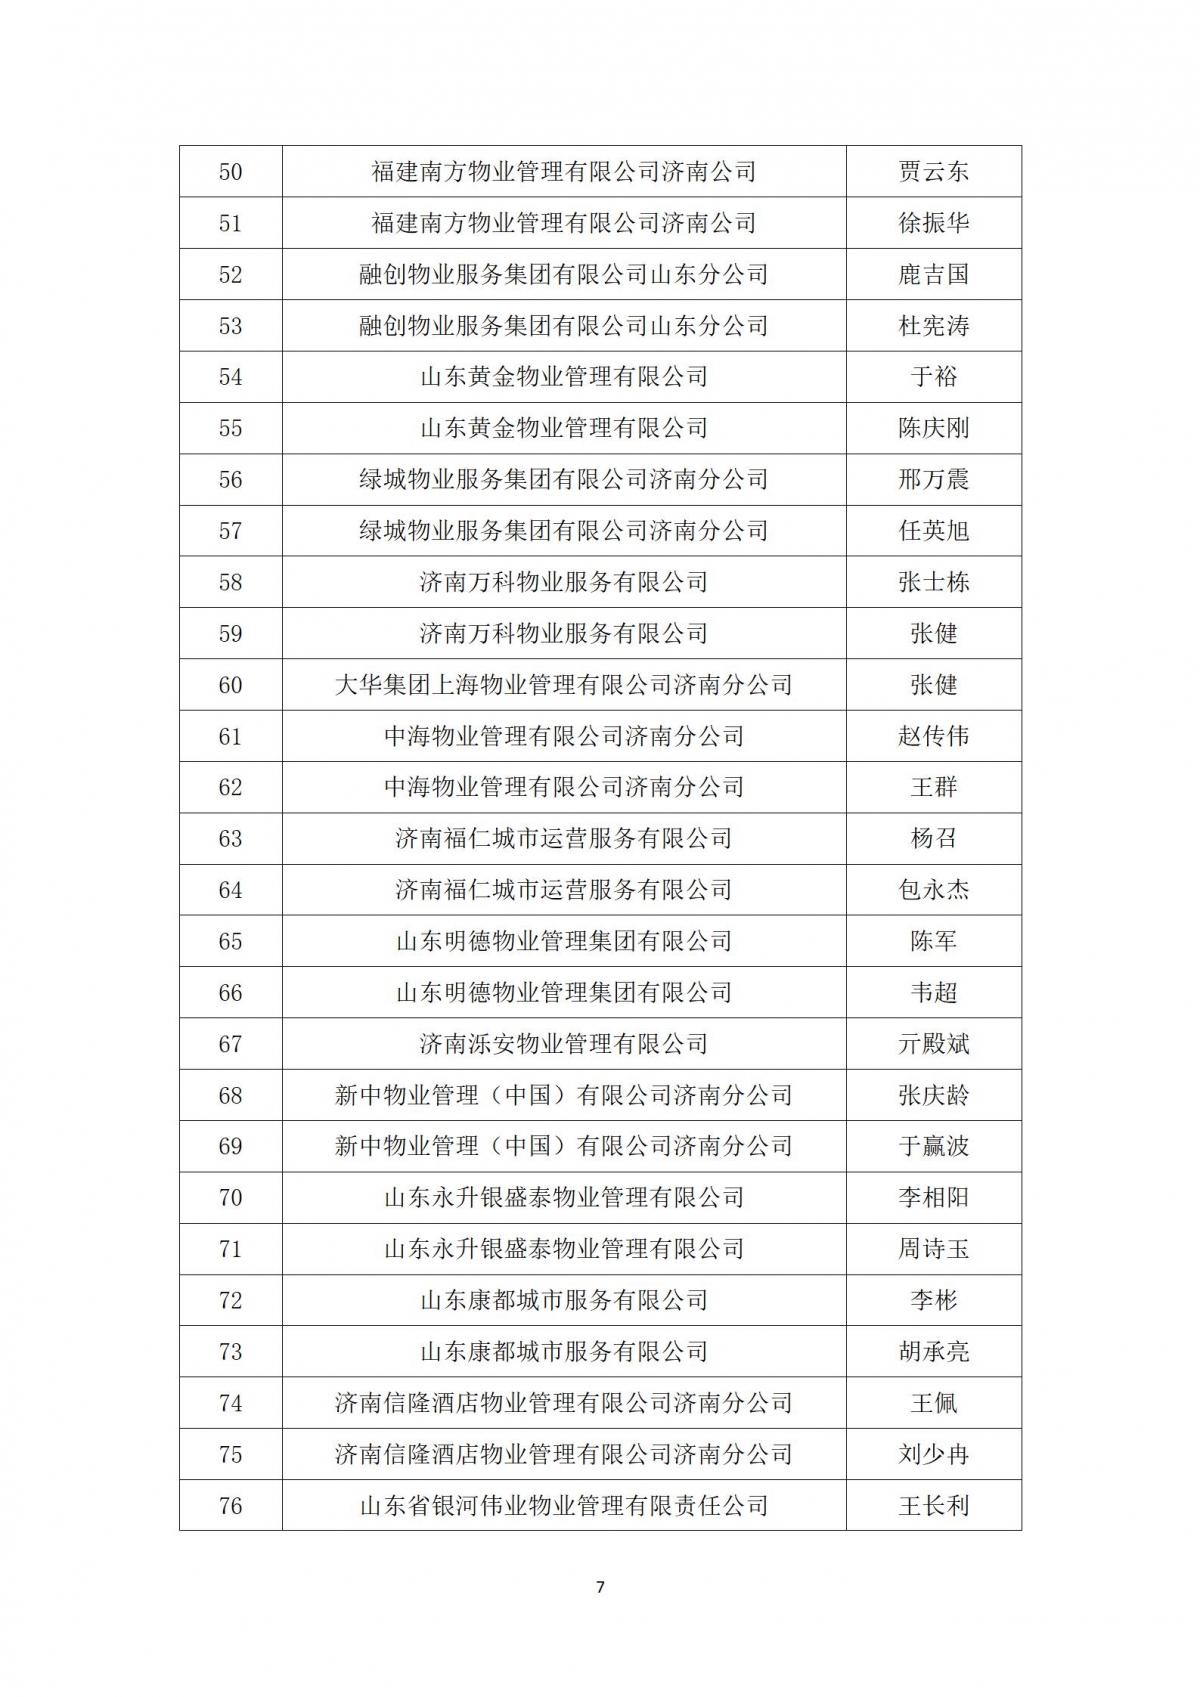 关于“天城杯”第七届济南市物业服务行业职业技能竞赛选手名单的公示_07